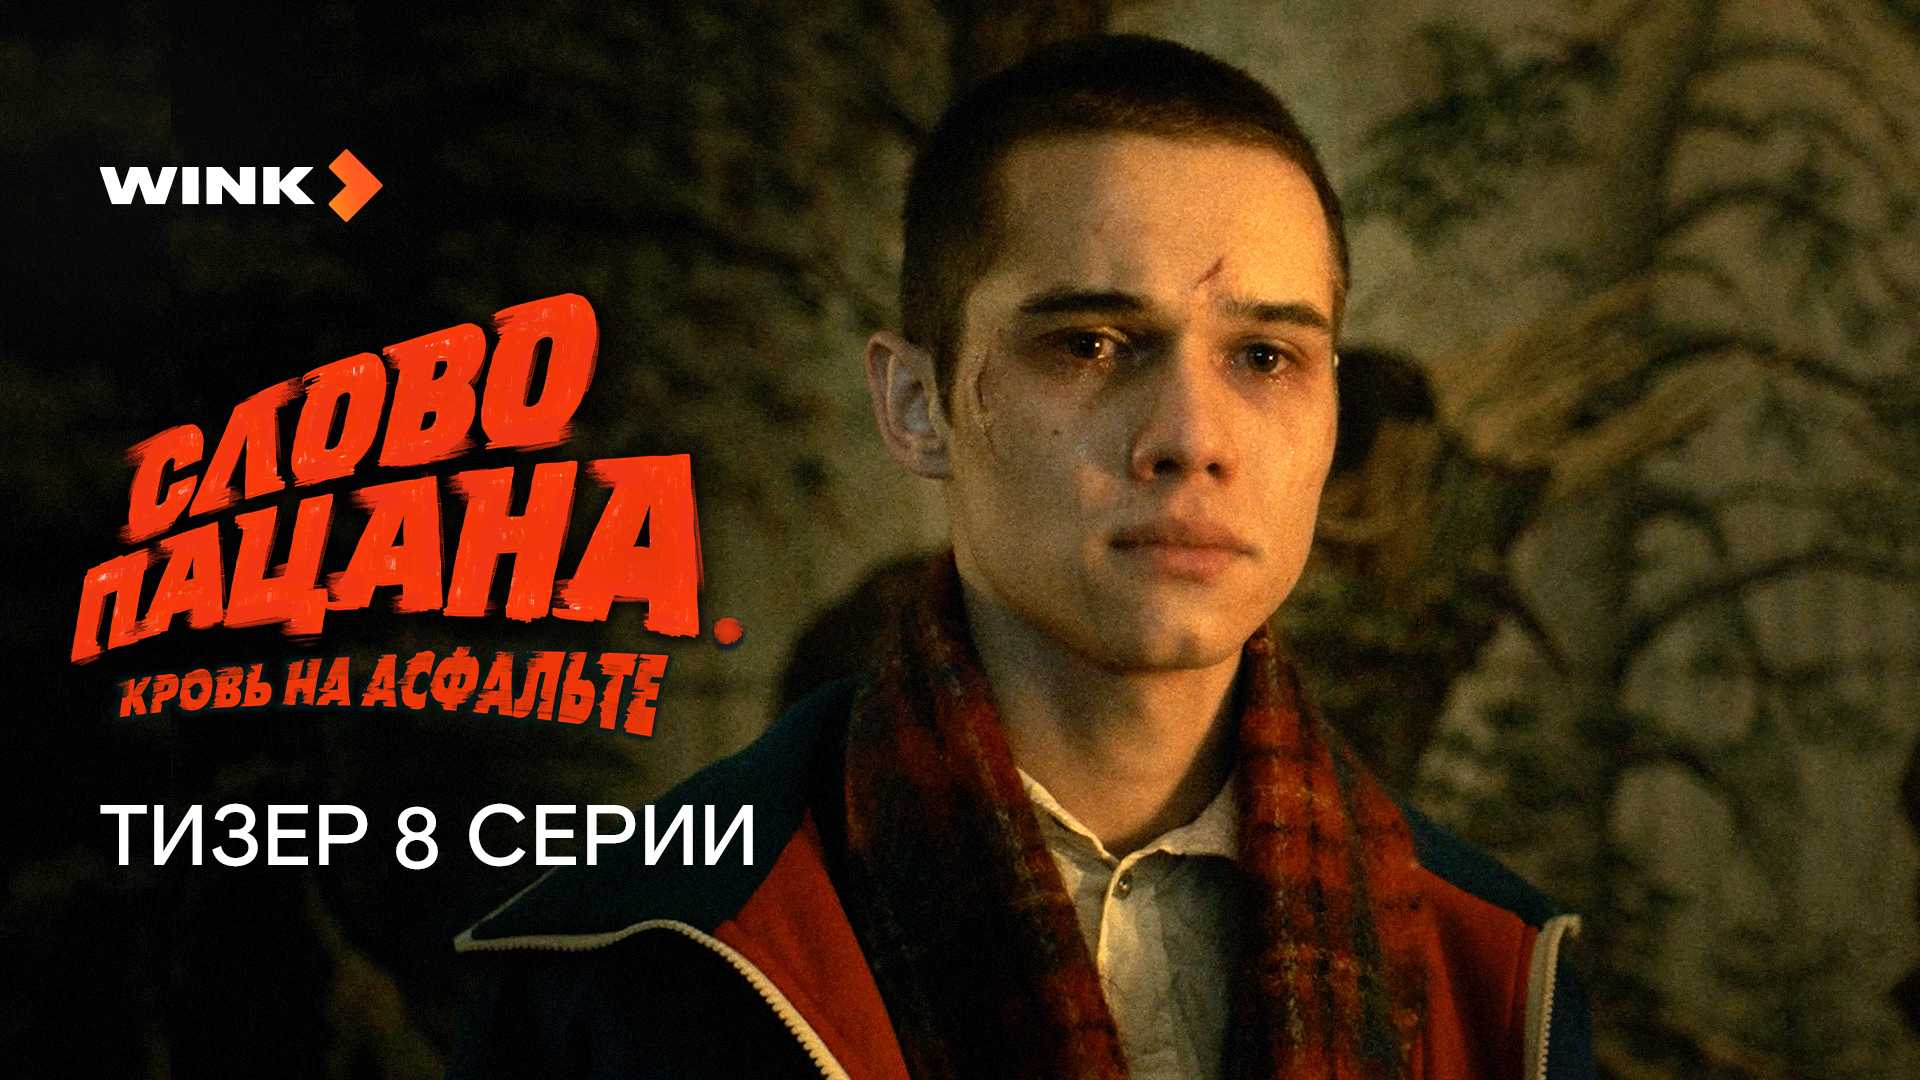 Реклама в россии: film.ru усовершенствовал дизайн